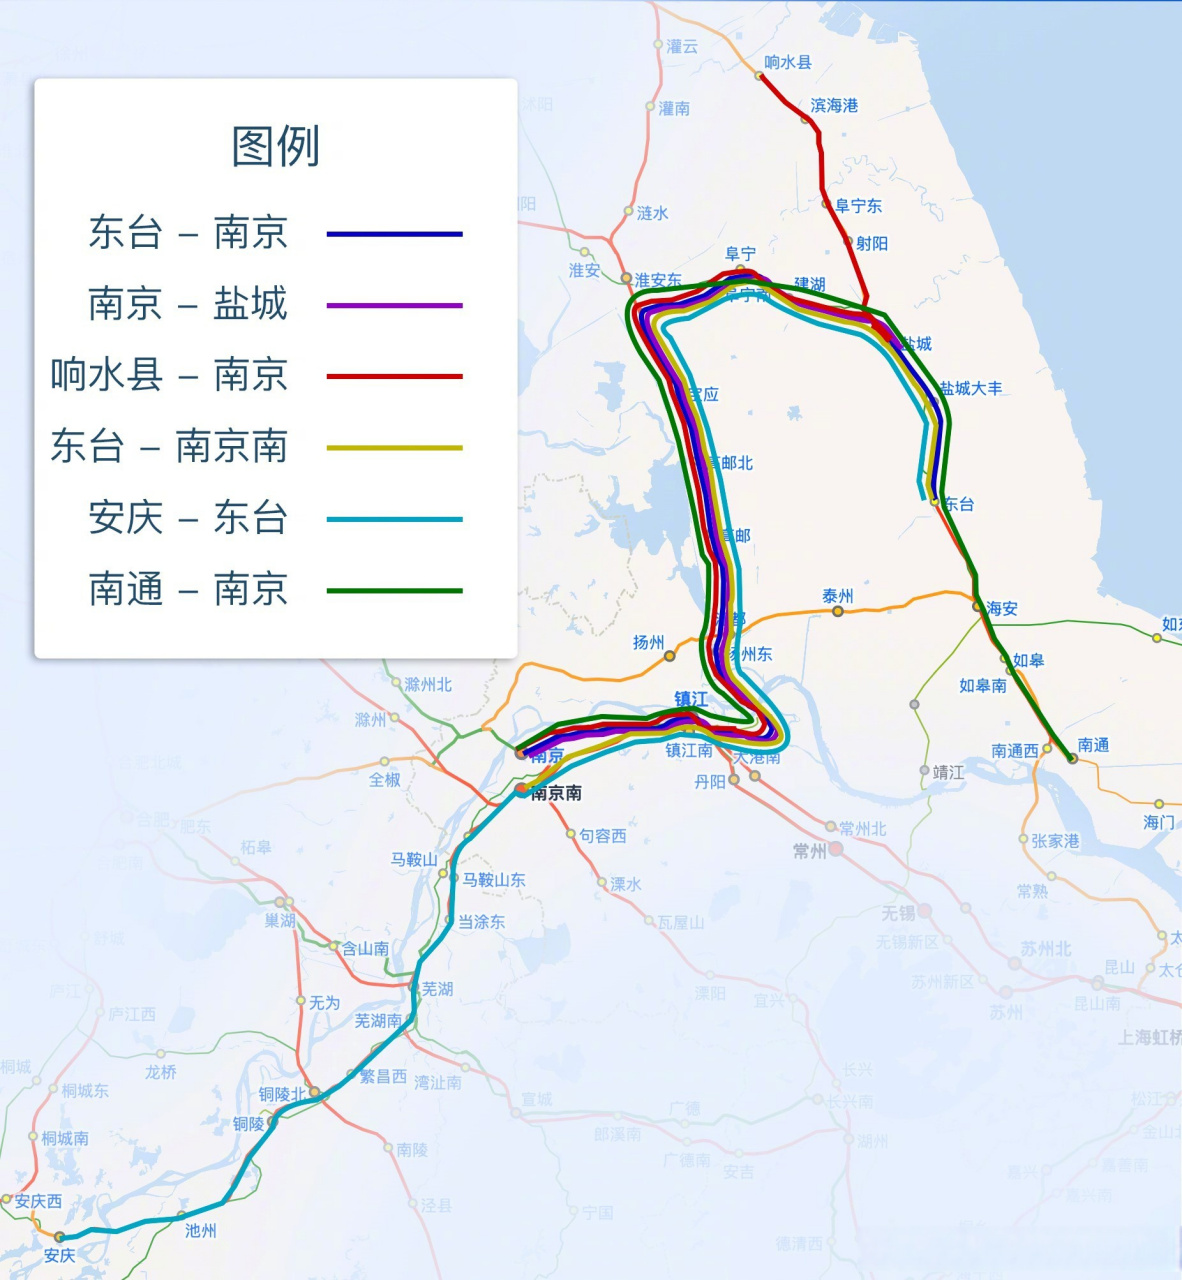 线(贡兴联络线)于8月2日开通运营,宁盐两地正式实现高铁2小时以内通达